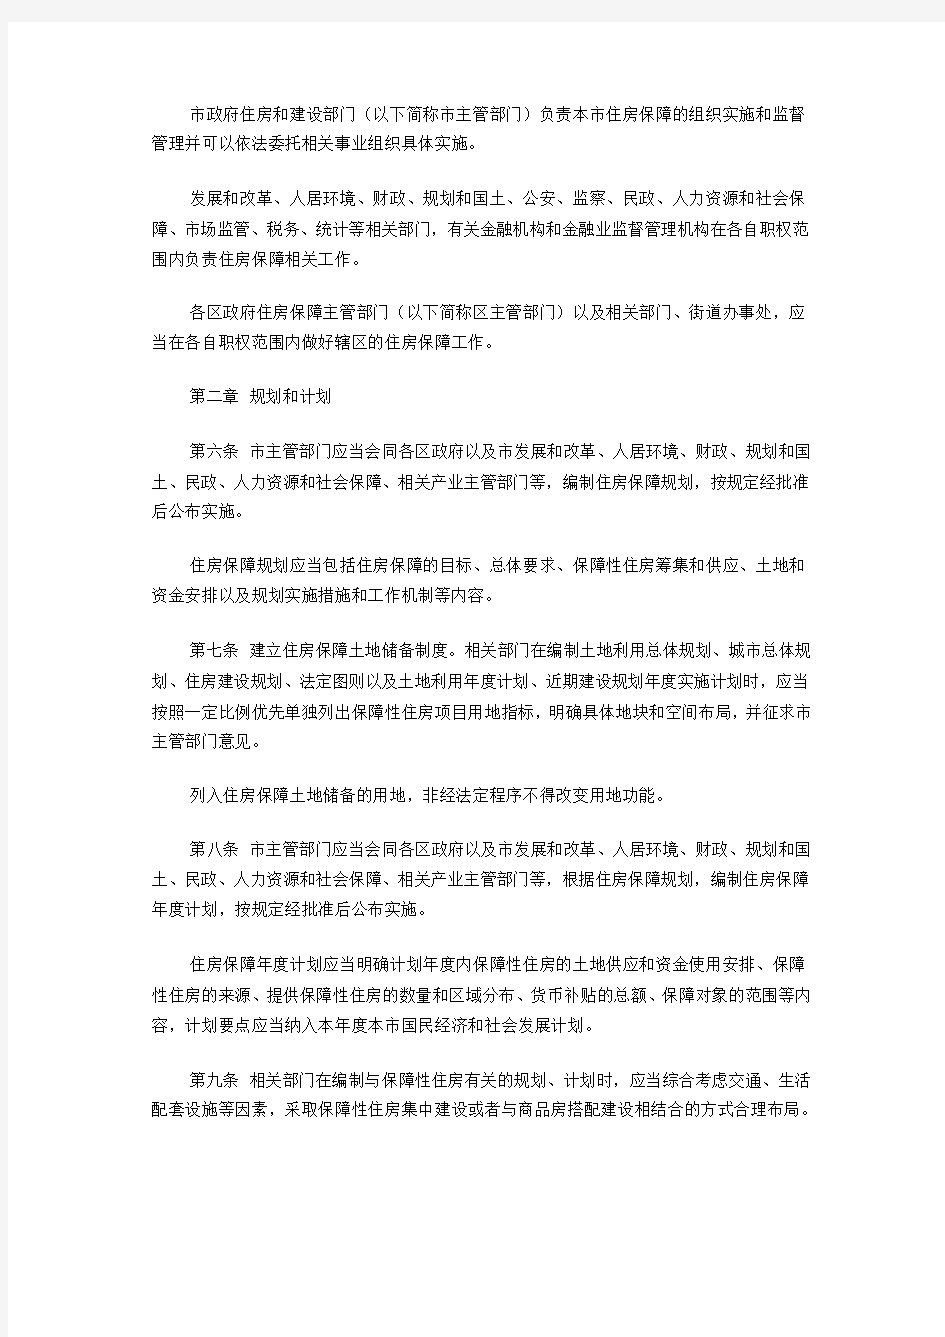 《深圳市保障性住房条例》